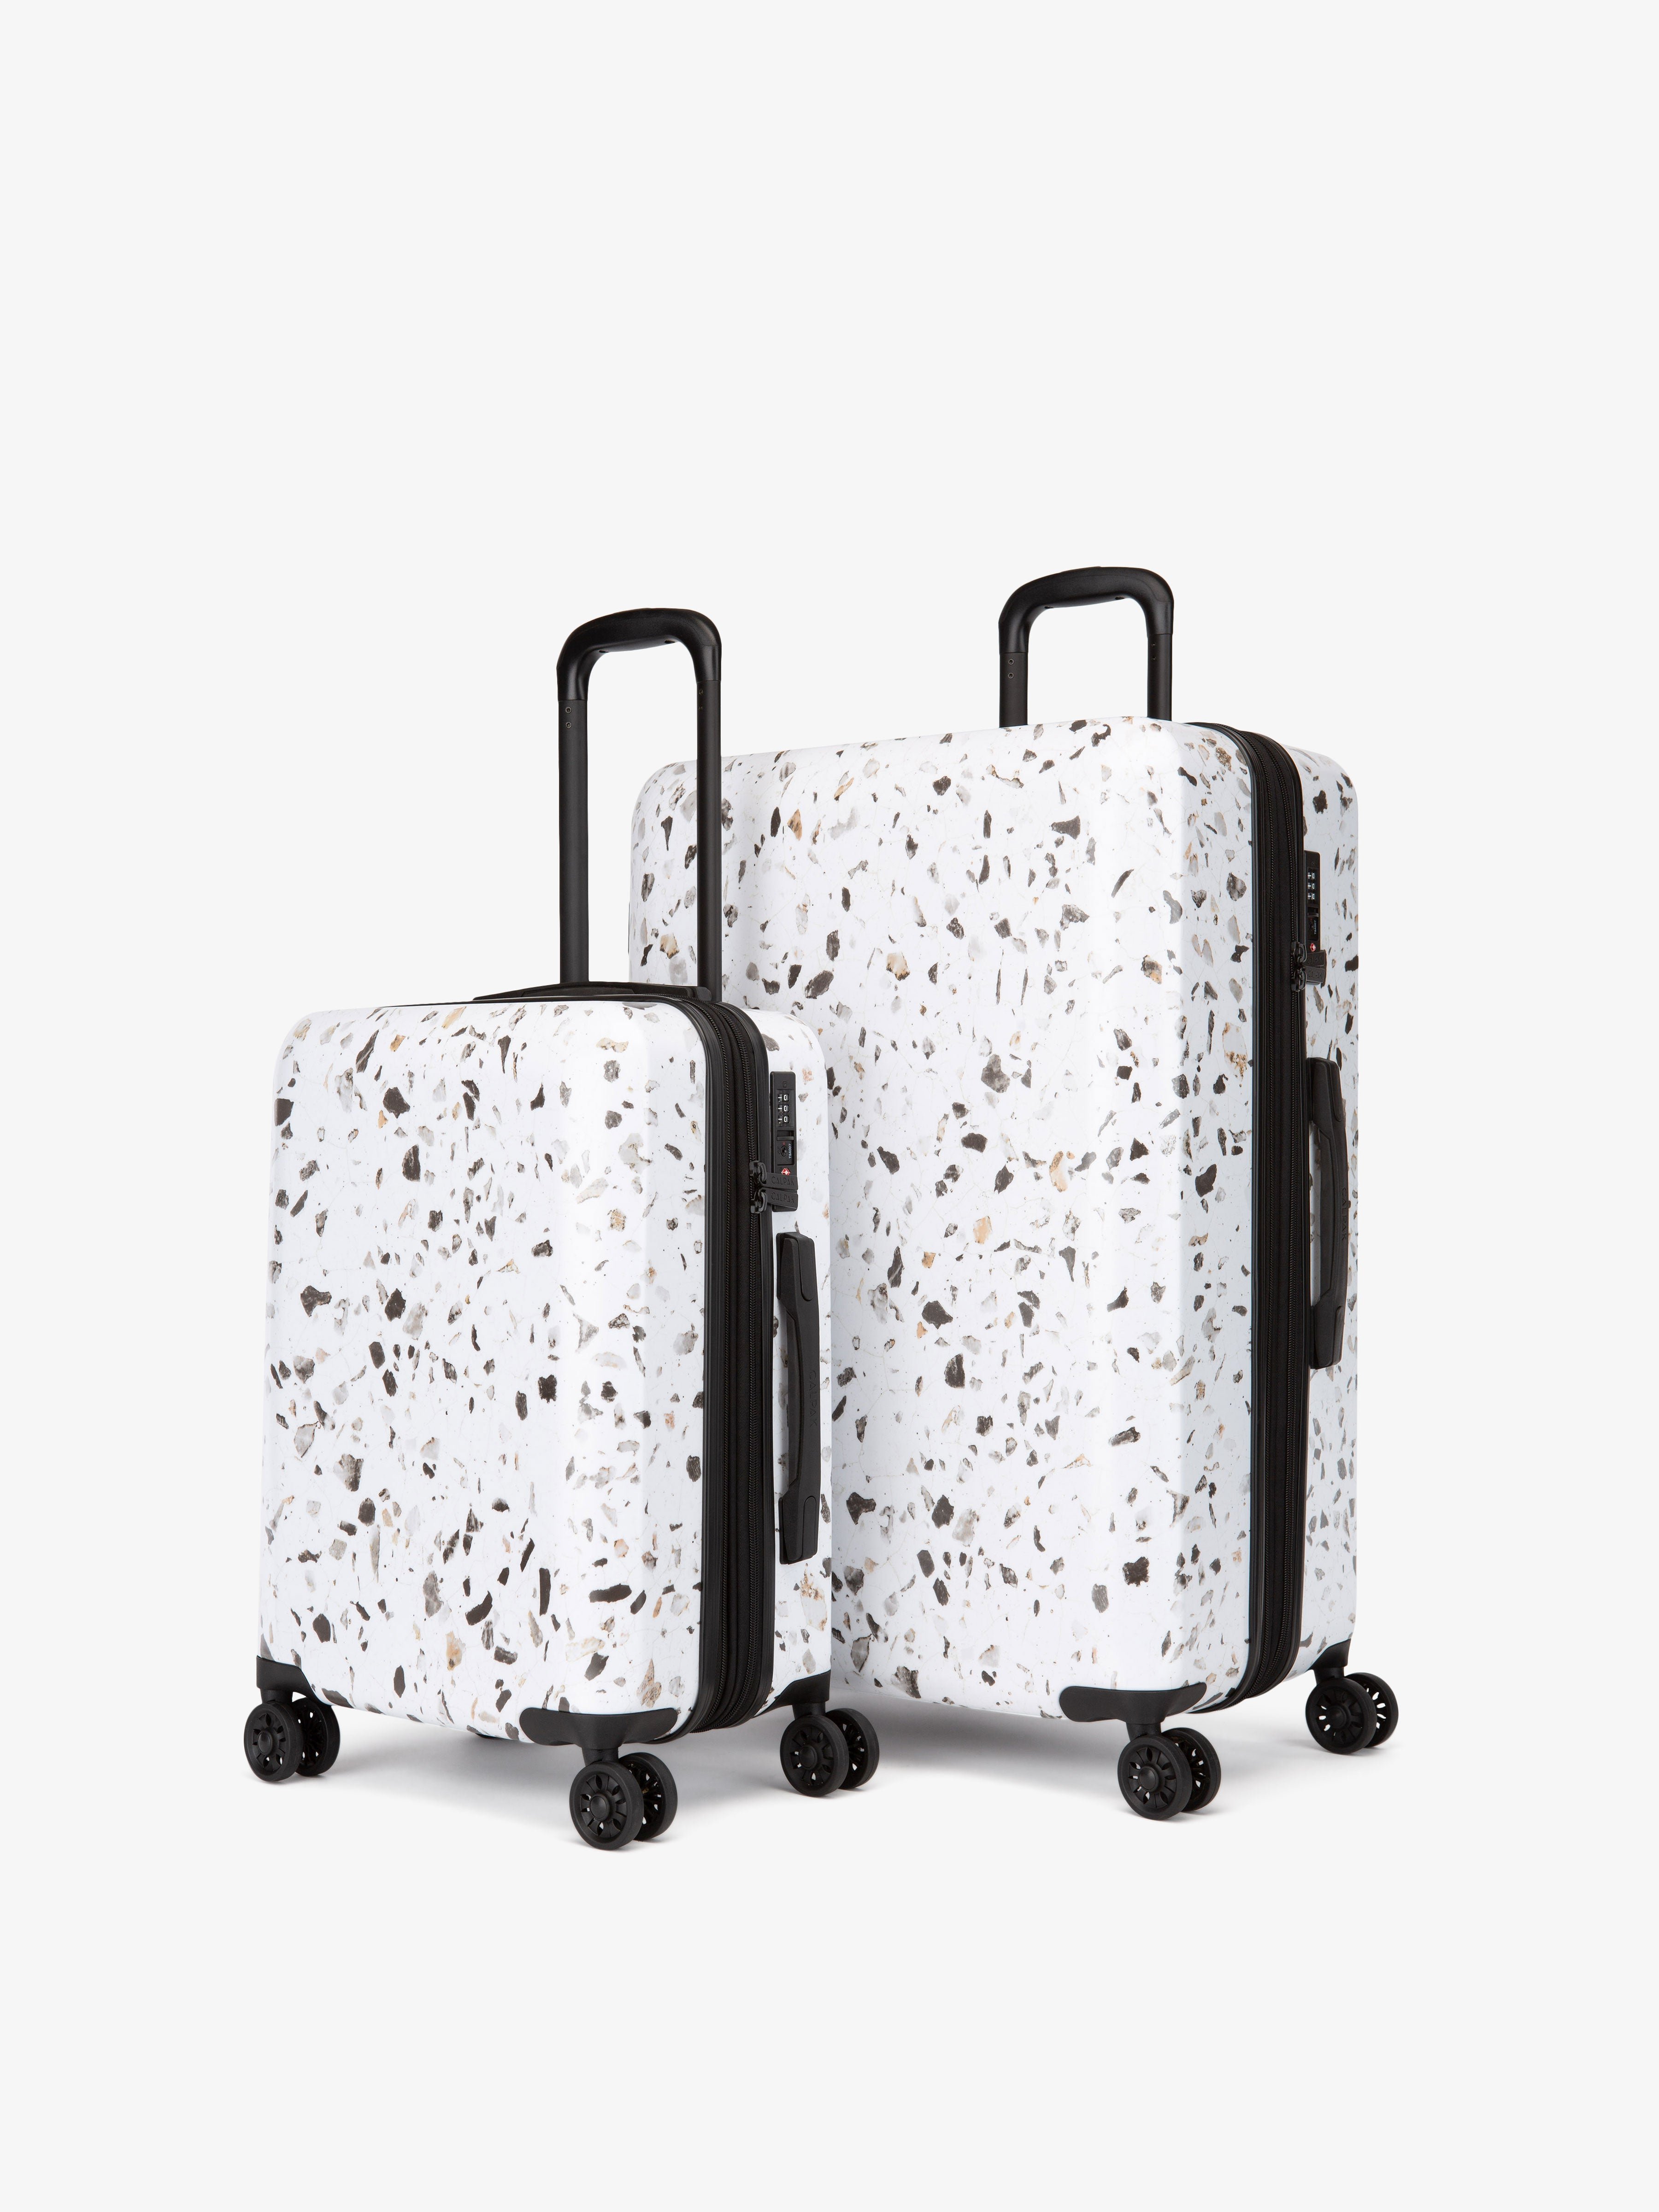 Terrazzo family luggage set